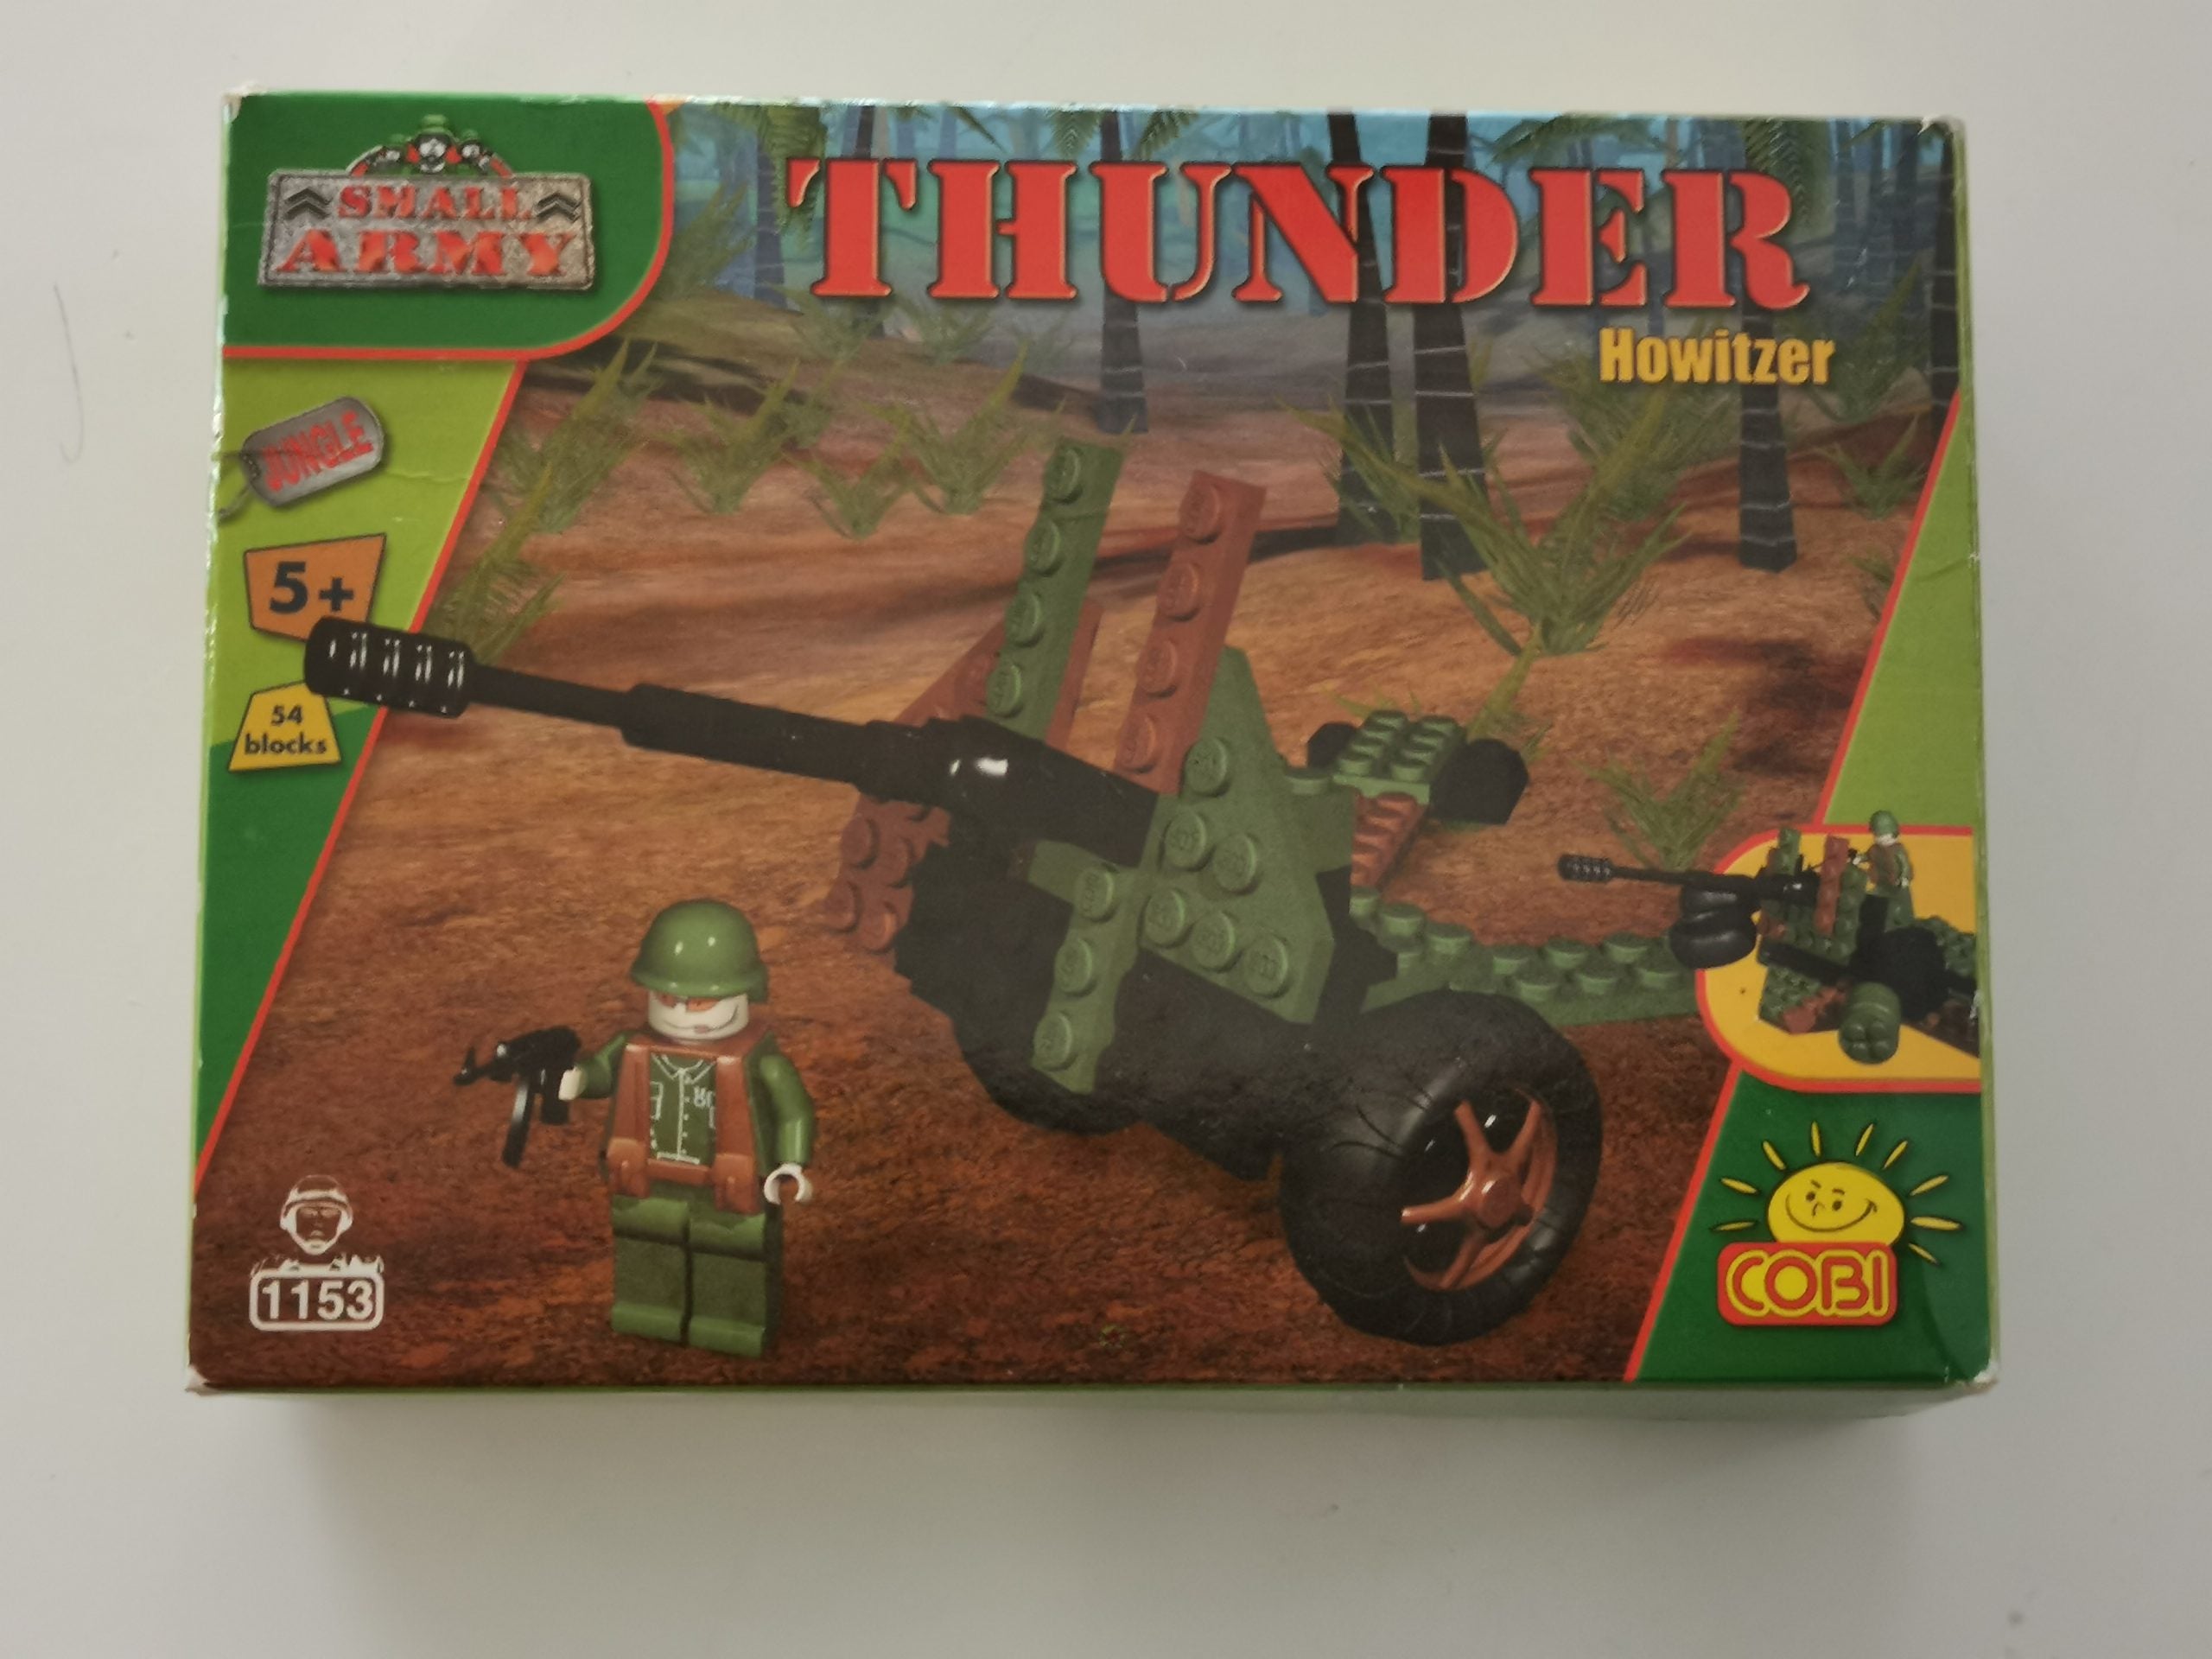 Cobi 1153 Thunder howitzer used